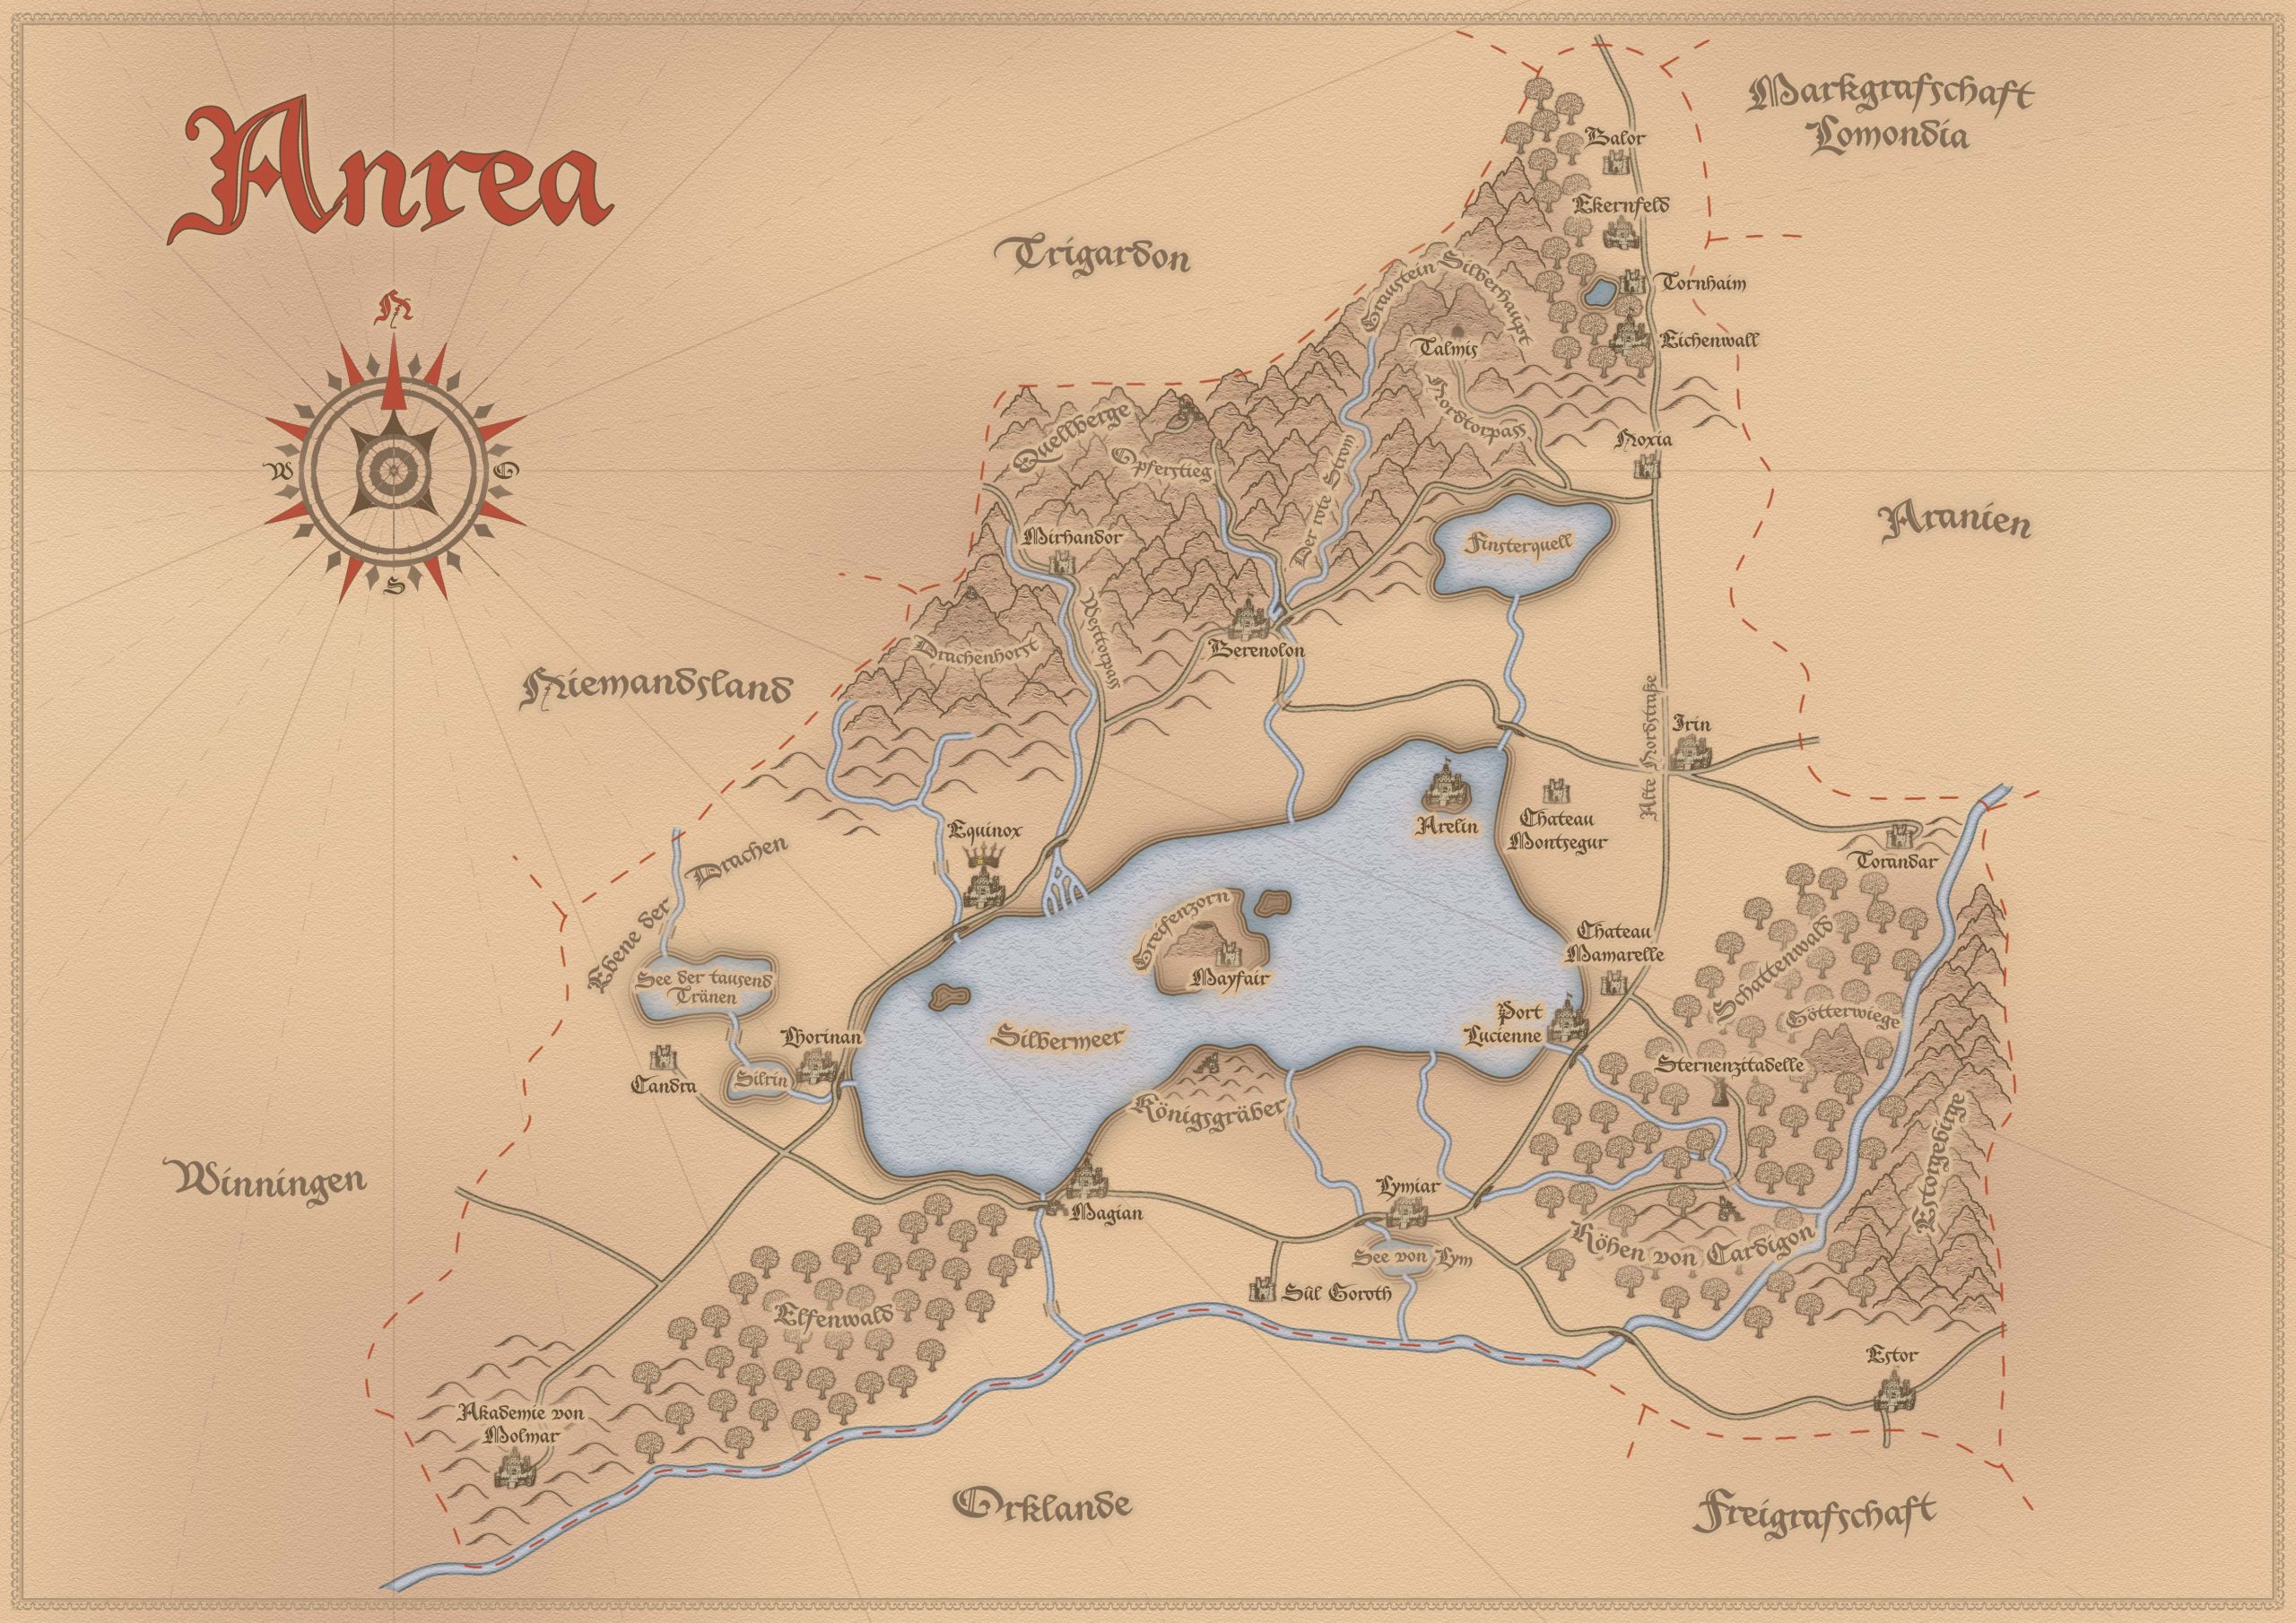 Karte des Fantasy LARP Landes "Anrea"